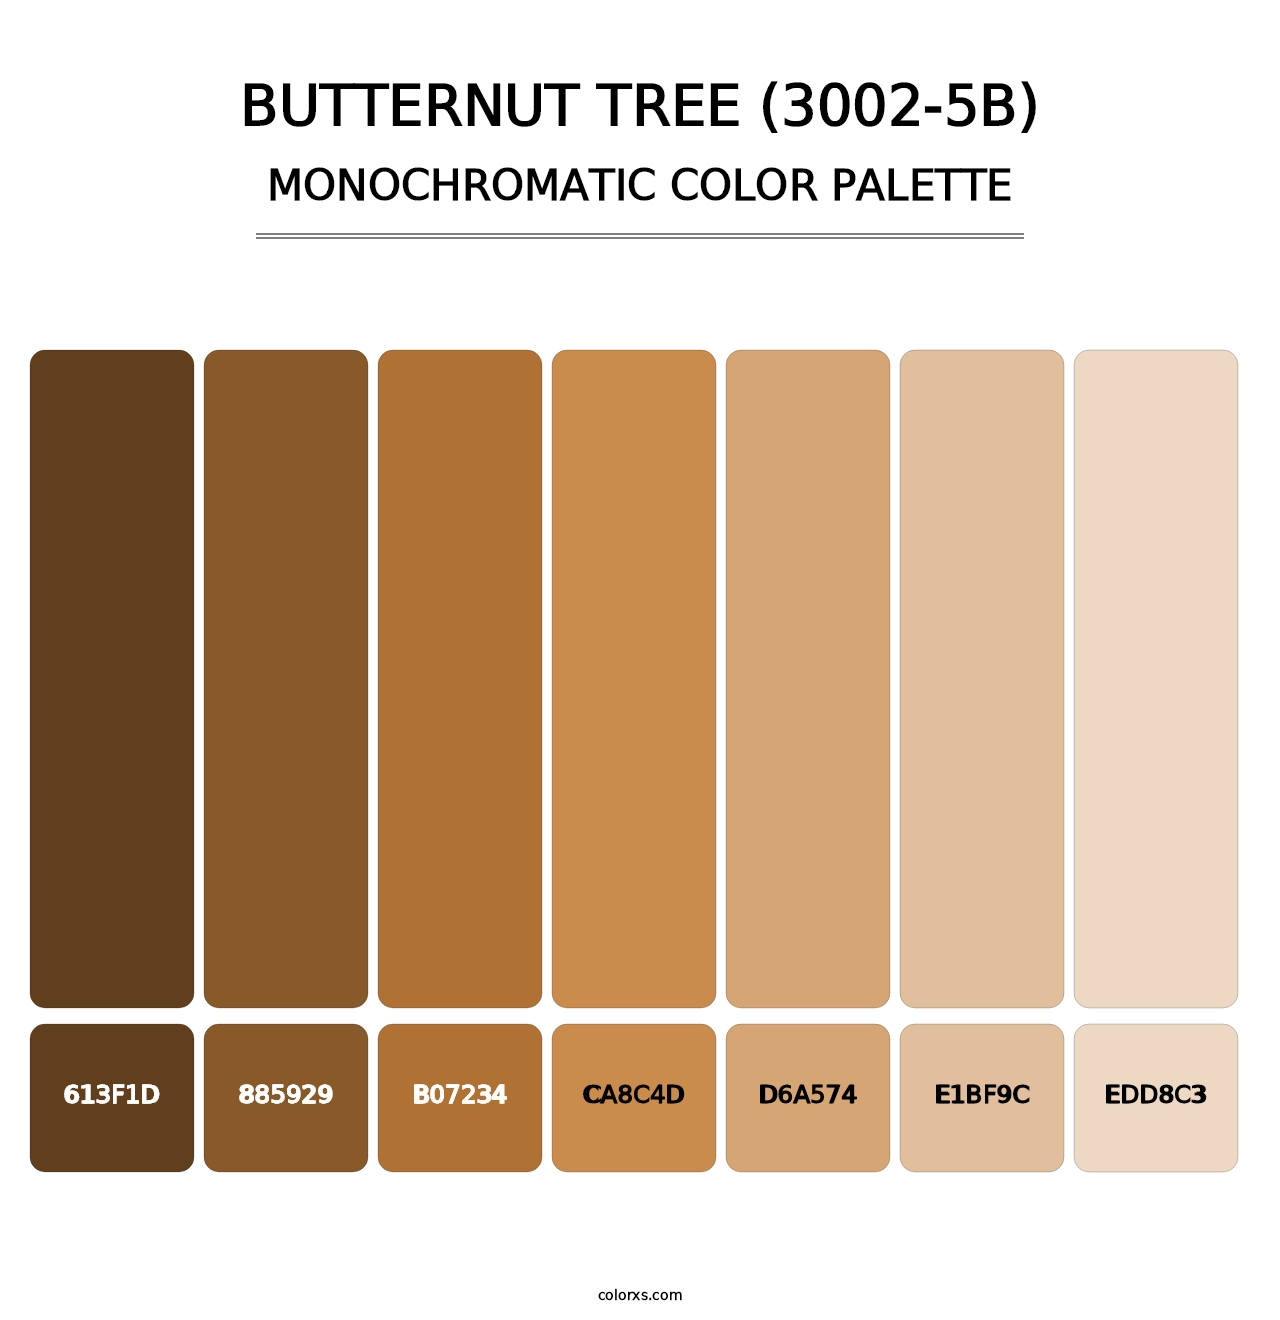 Butternut Tree (3002-5B) - Monochromatic Color Palette